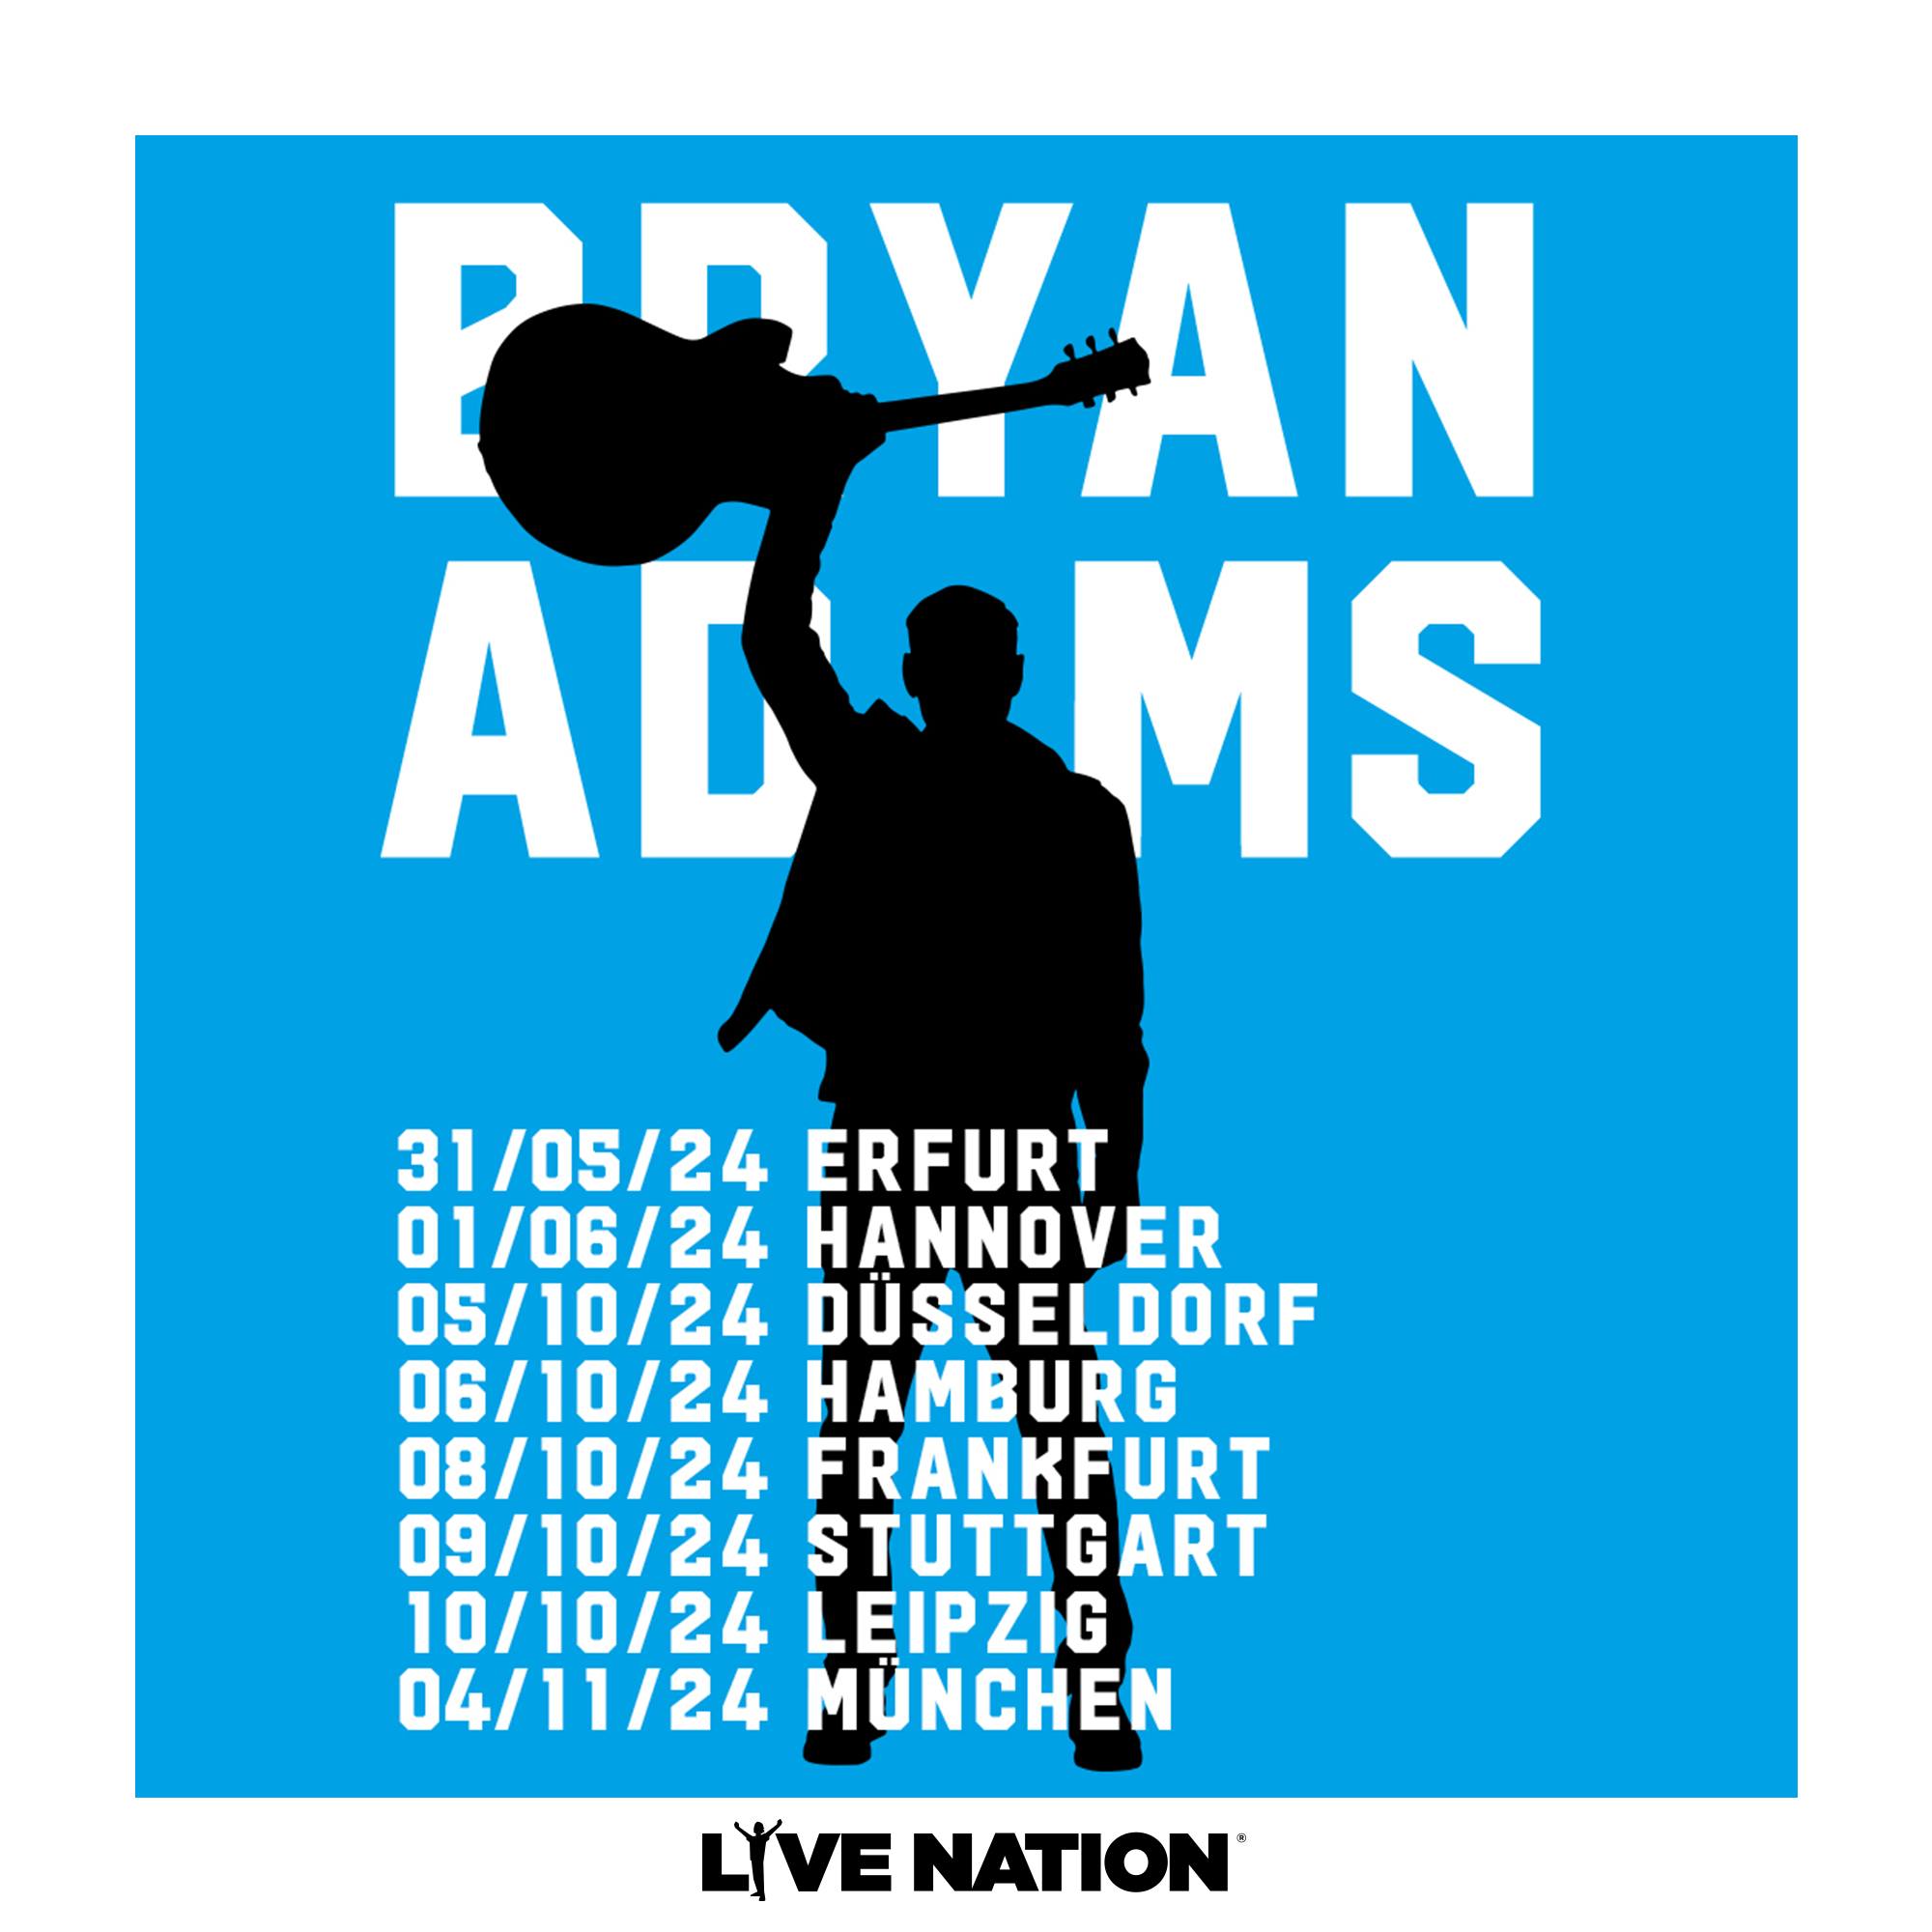 Bryan Adams al Barclays Arena Tickets